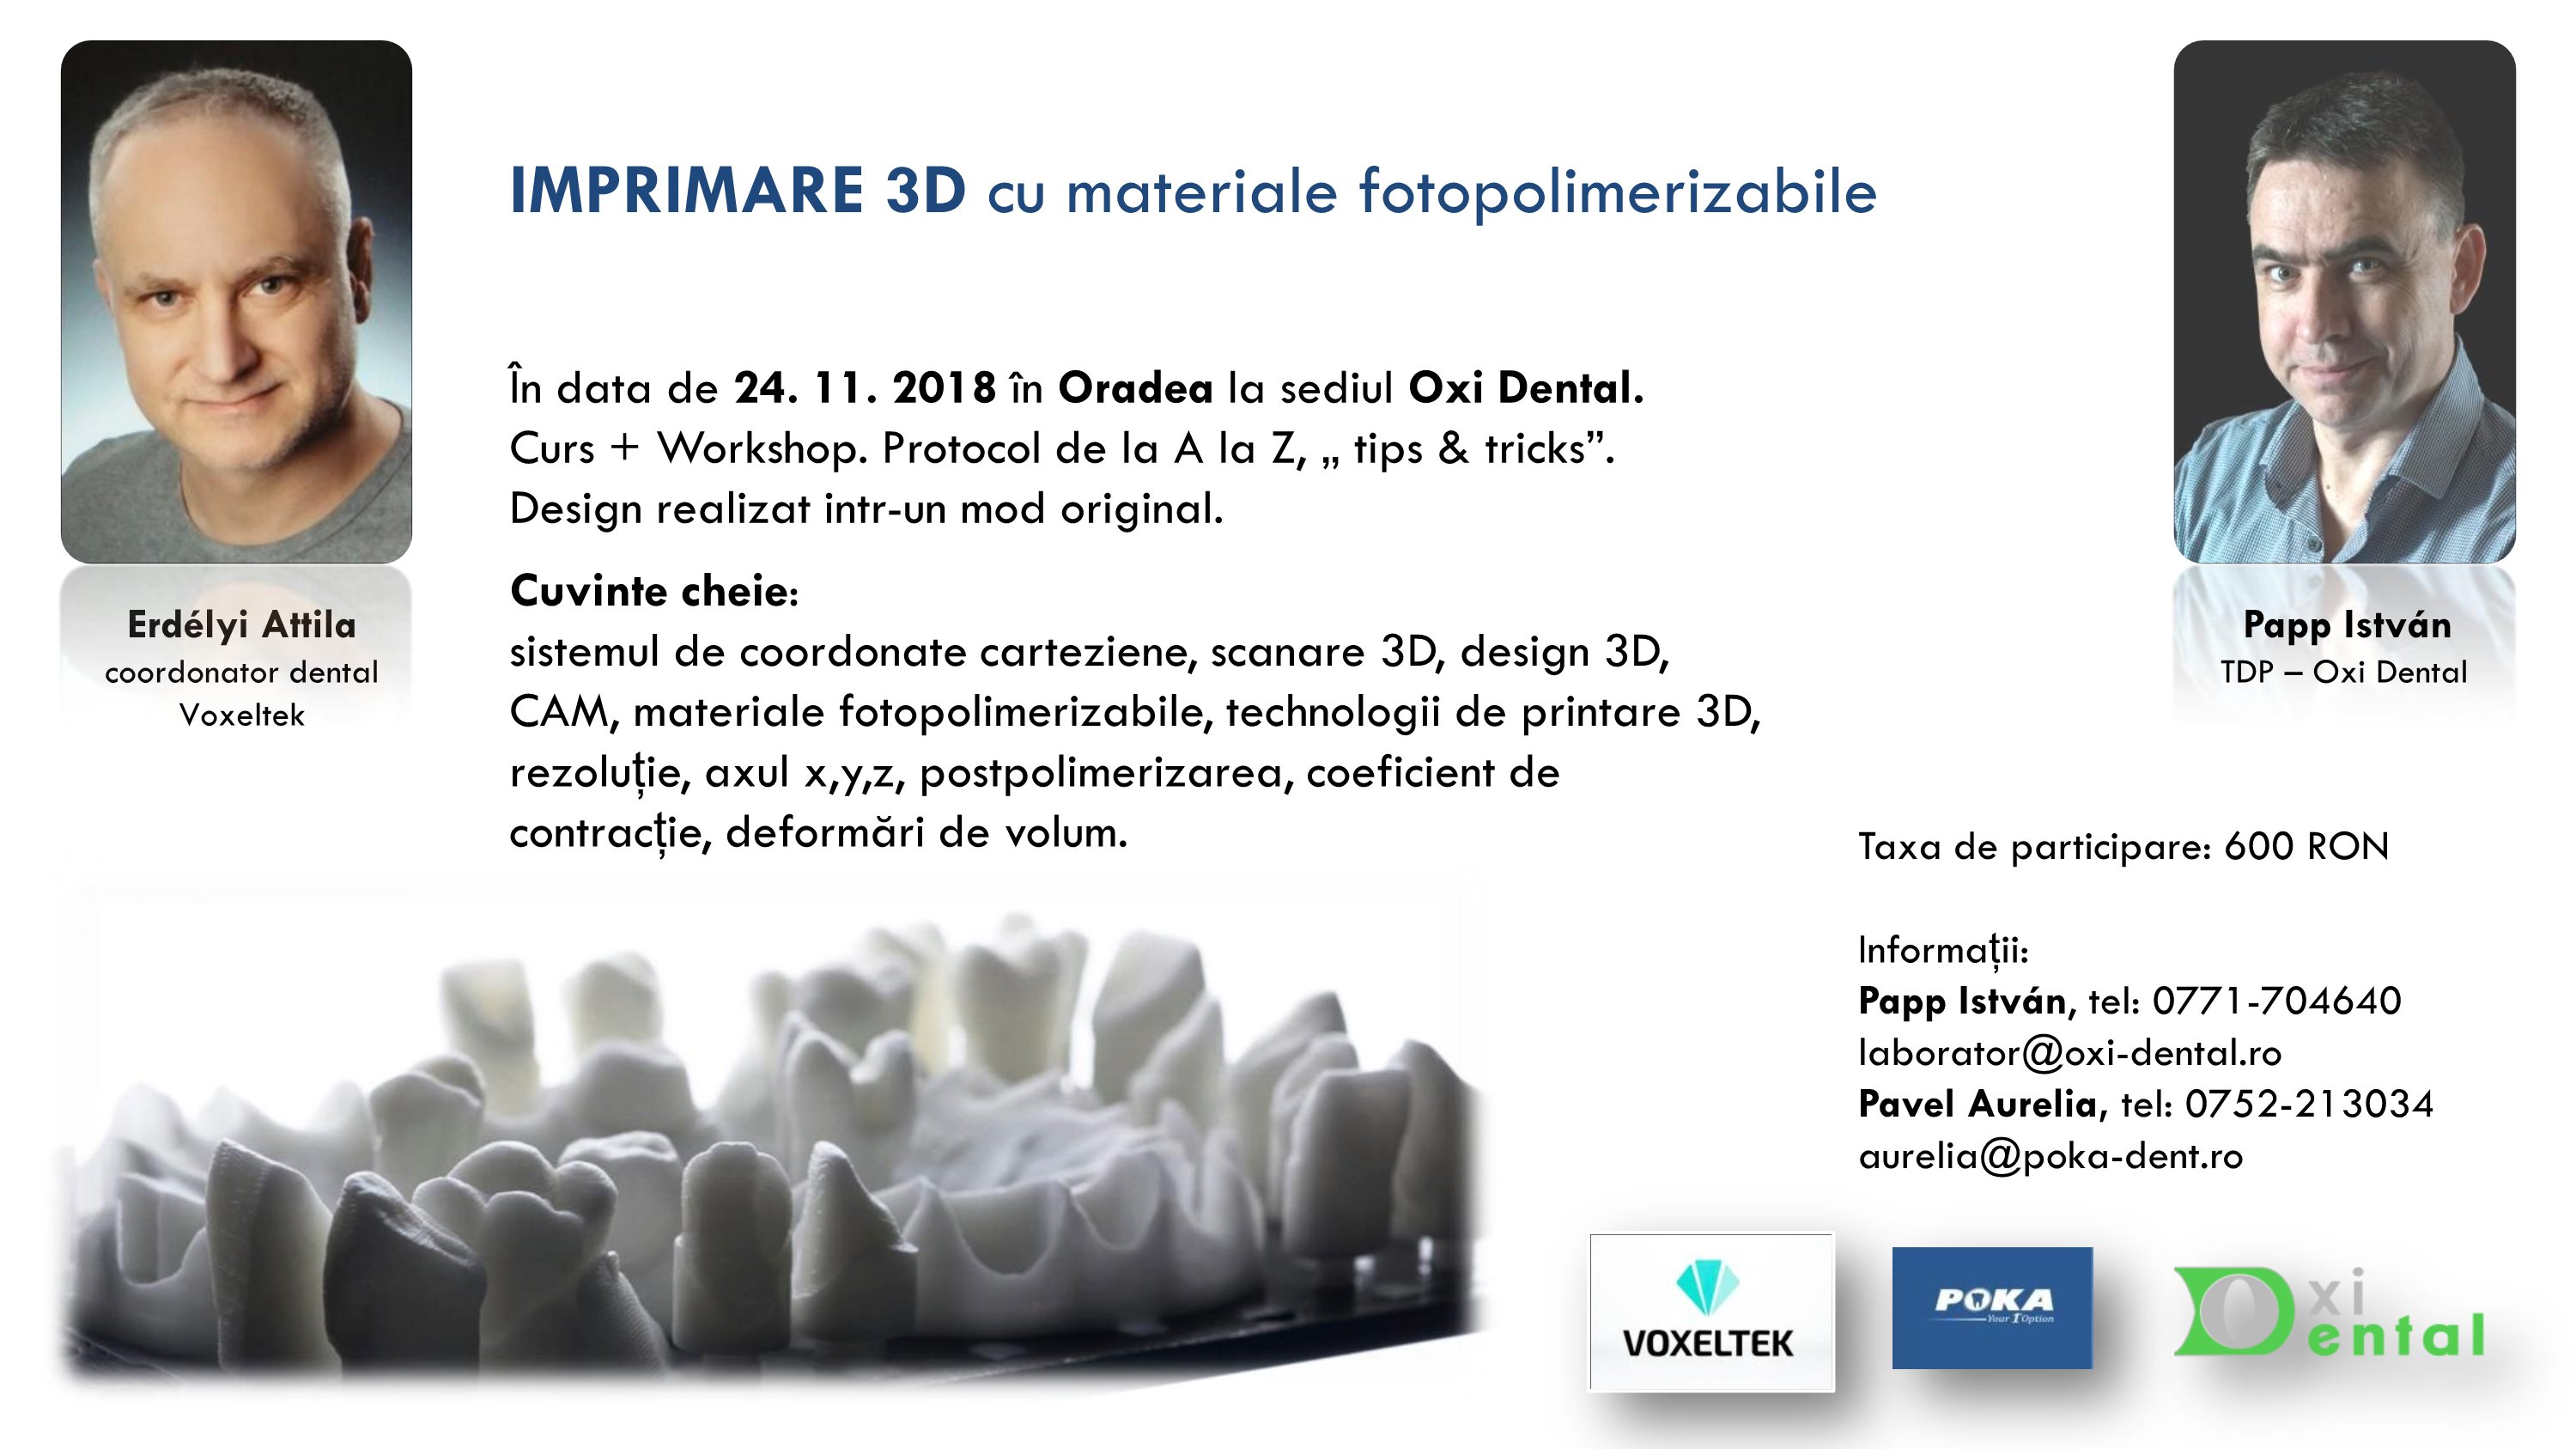 Imprimare 3D cu materiale fotopolimerizabile